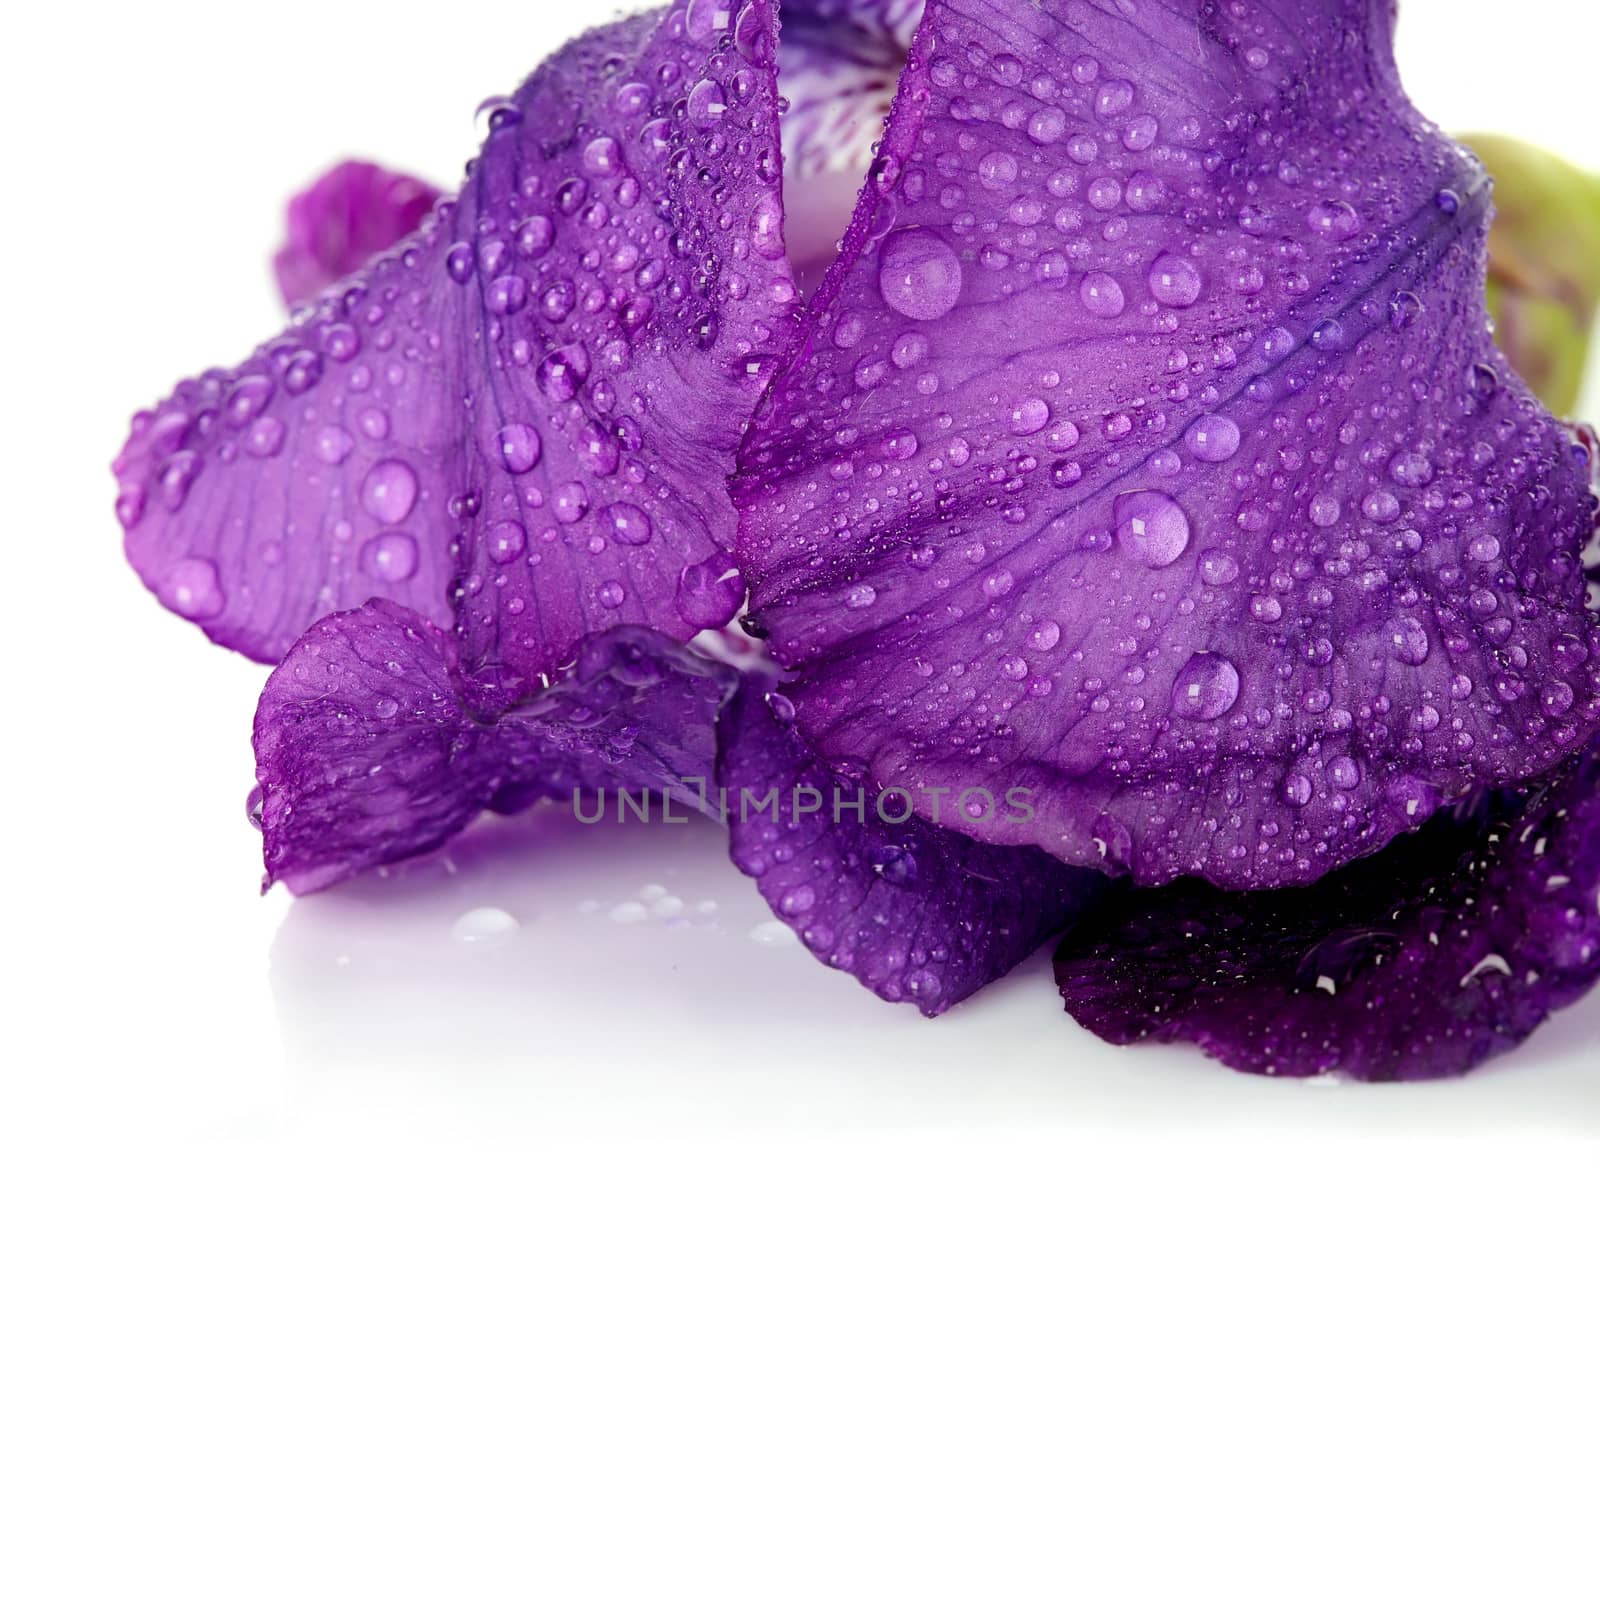 Violet flower. Iris flower. Violet iris. Petals of a violet flower of an iris. Flower in dew drops. Flower petals in dew drops.